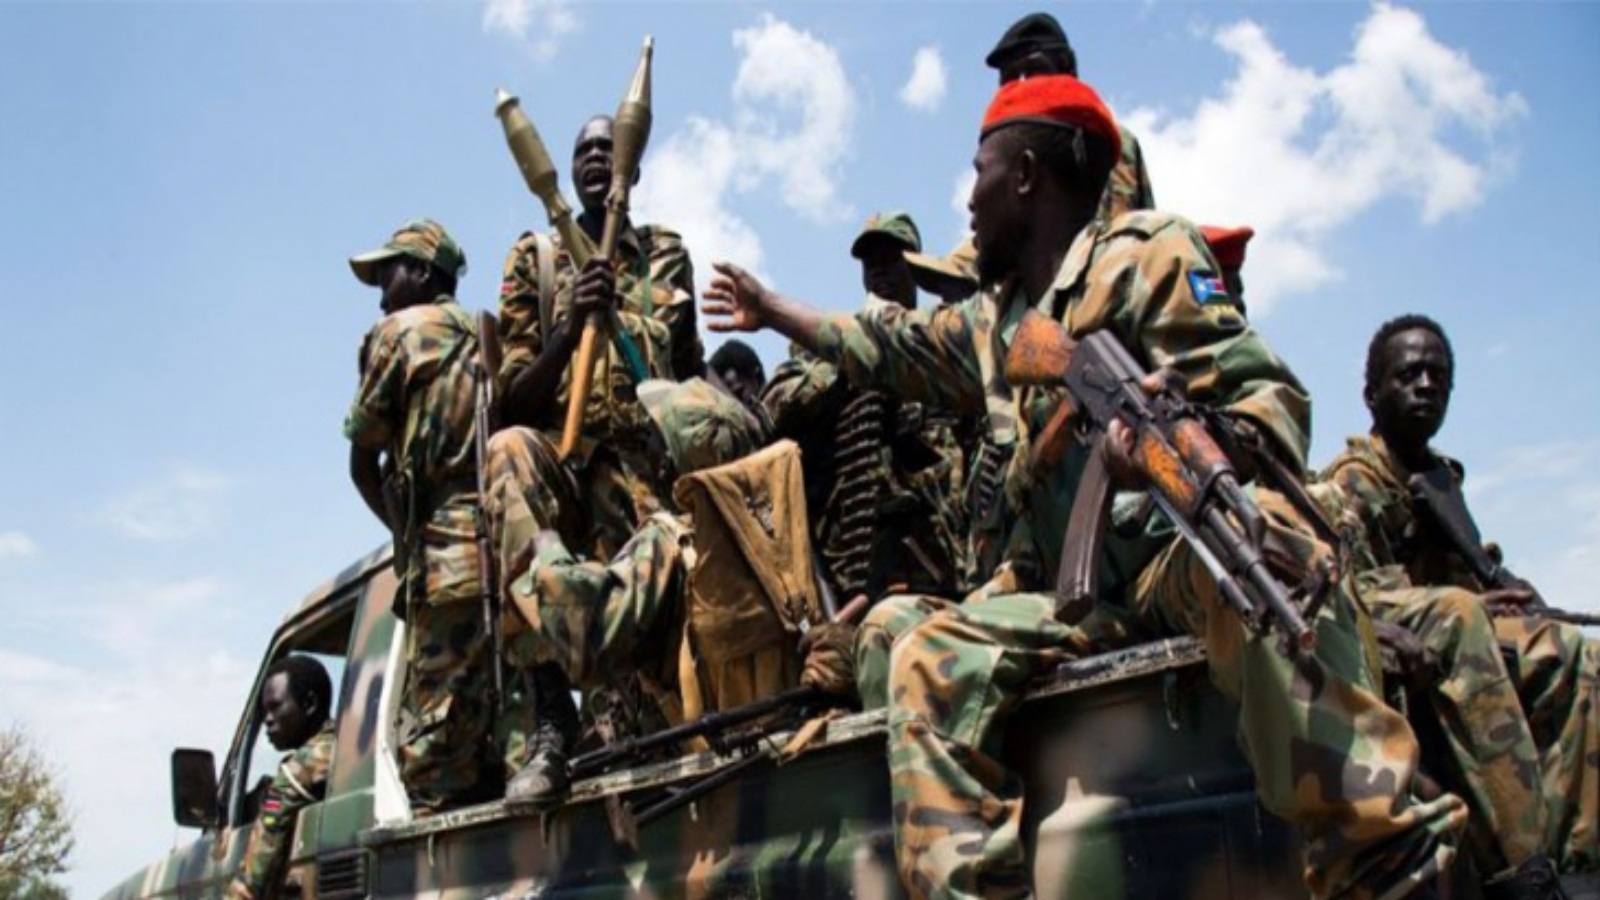 قوات حكومية في أفريقيا الوسطى التي تشهد معارك مستمرة مع المتمردين